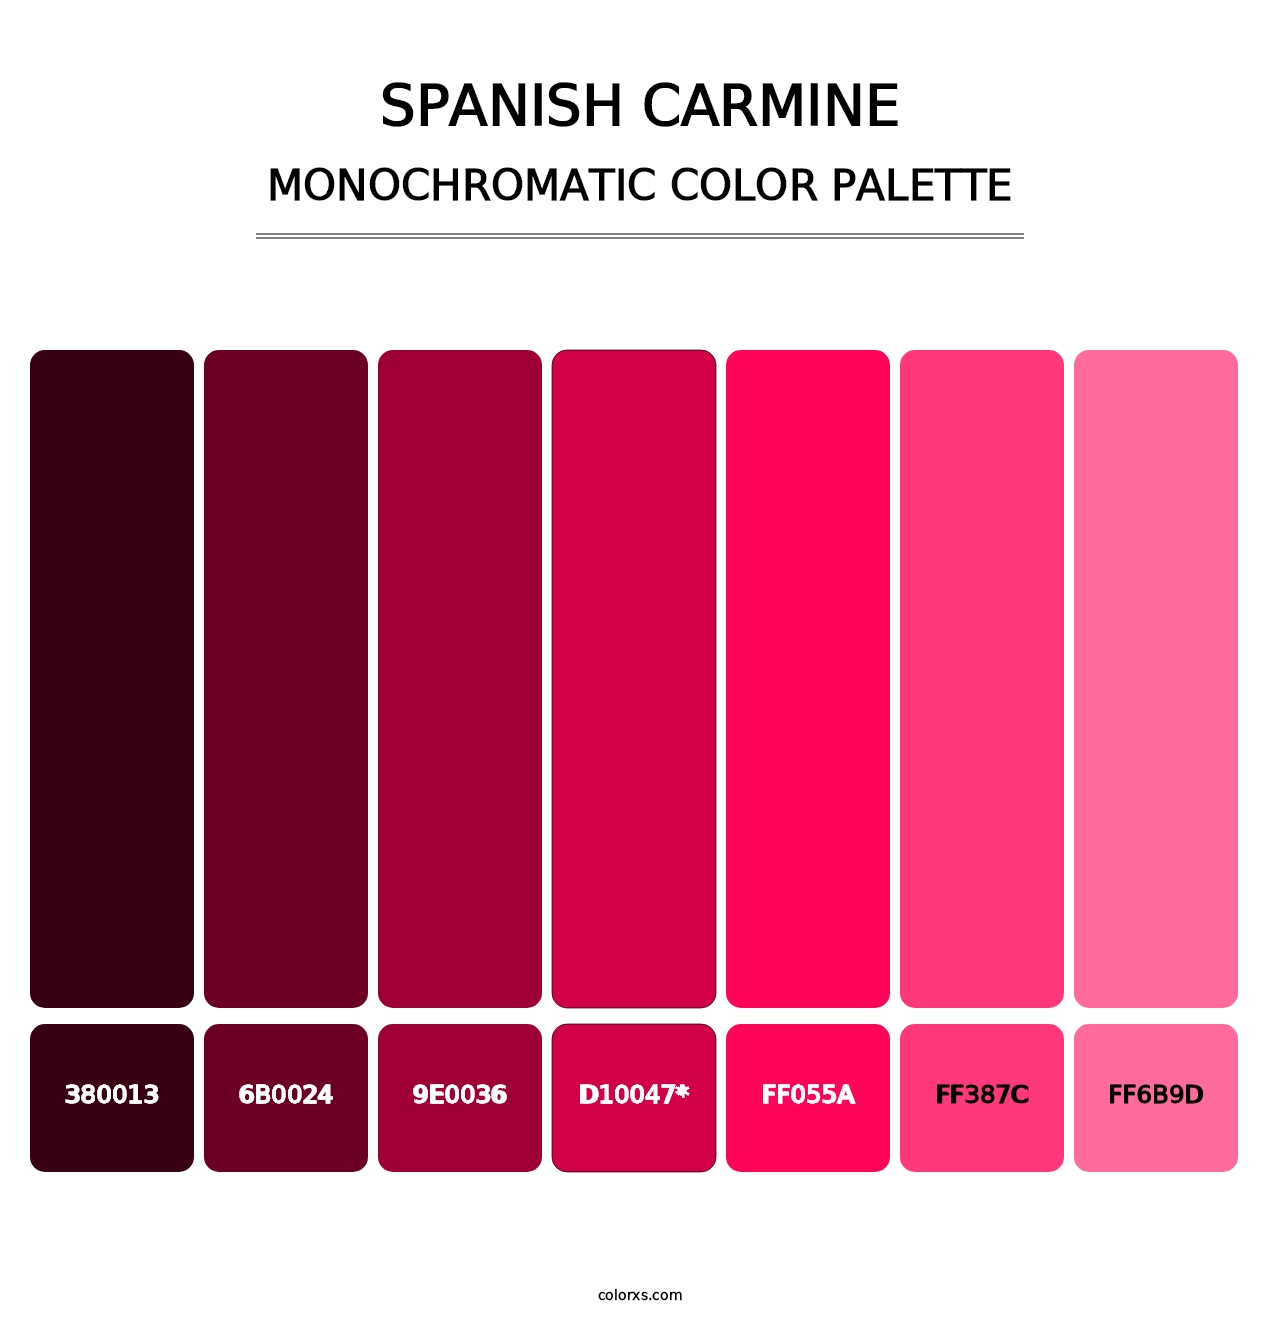 Spanish Carmine - Monochromatic Color Palette